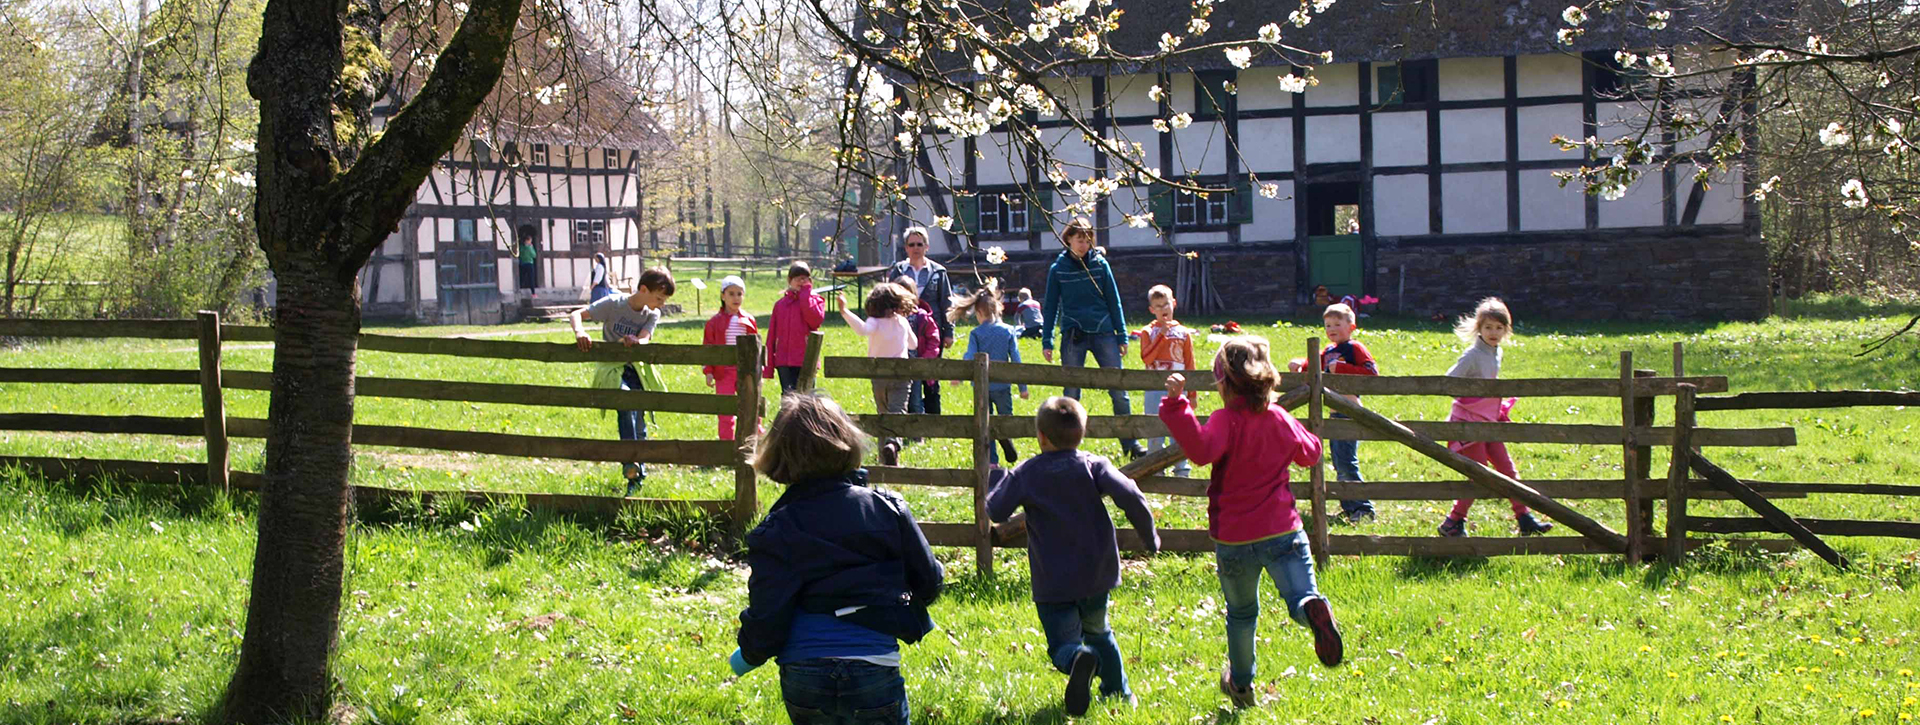 Kinder rennen über eine Wiese, im Hintergrund Fachwerkhäuser